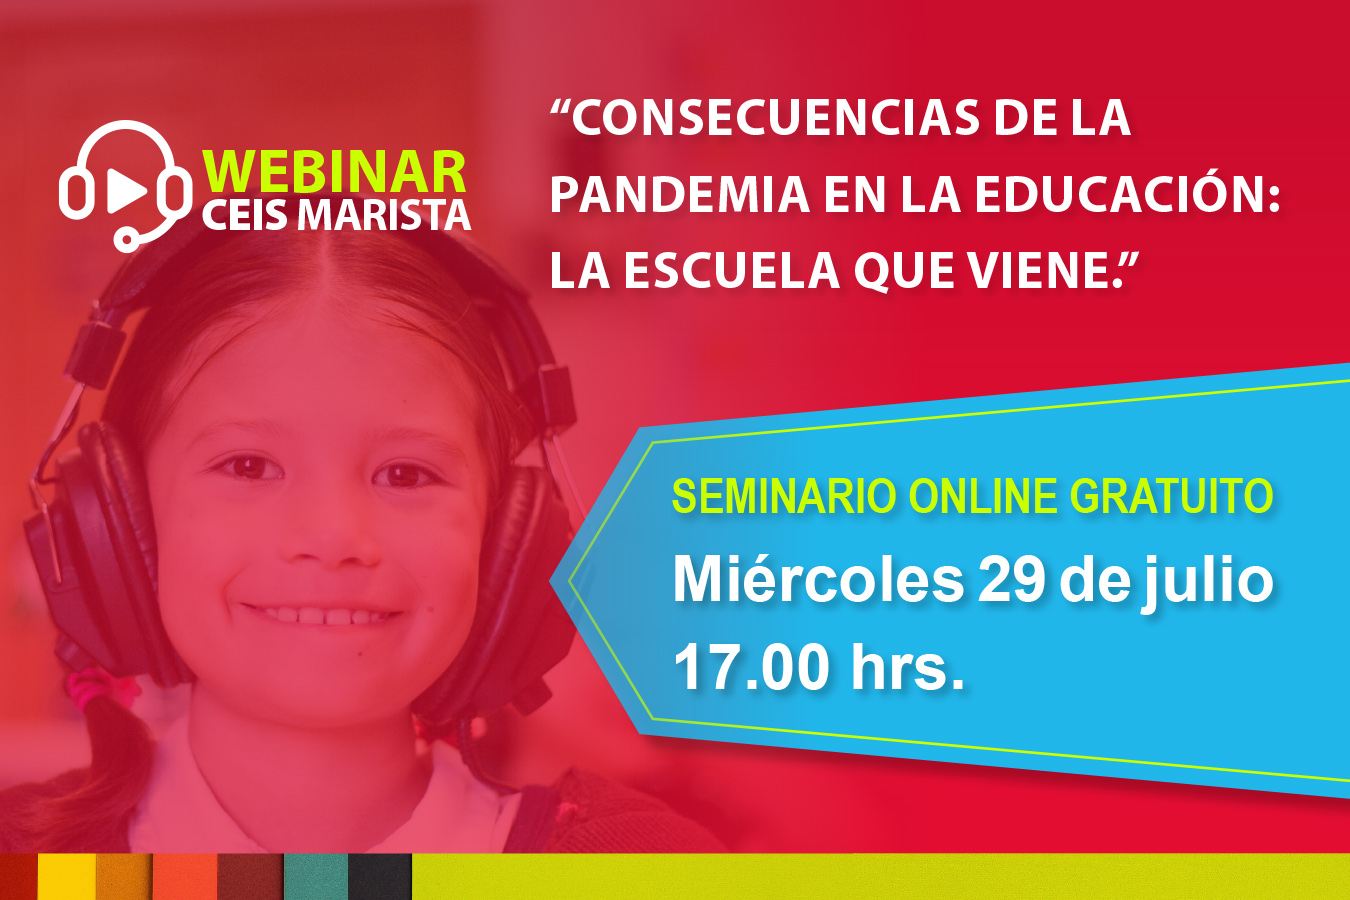 Webinar Ceis Marista: “ConsecuenciaS de la Pandemia en la educación: La Escuela que viene”.